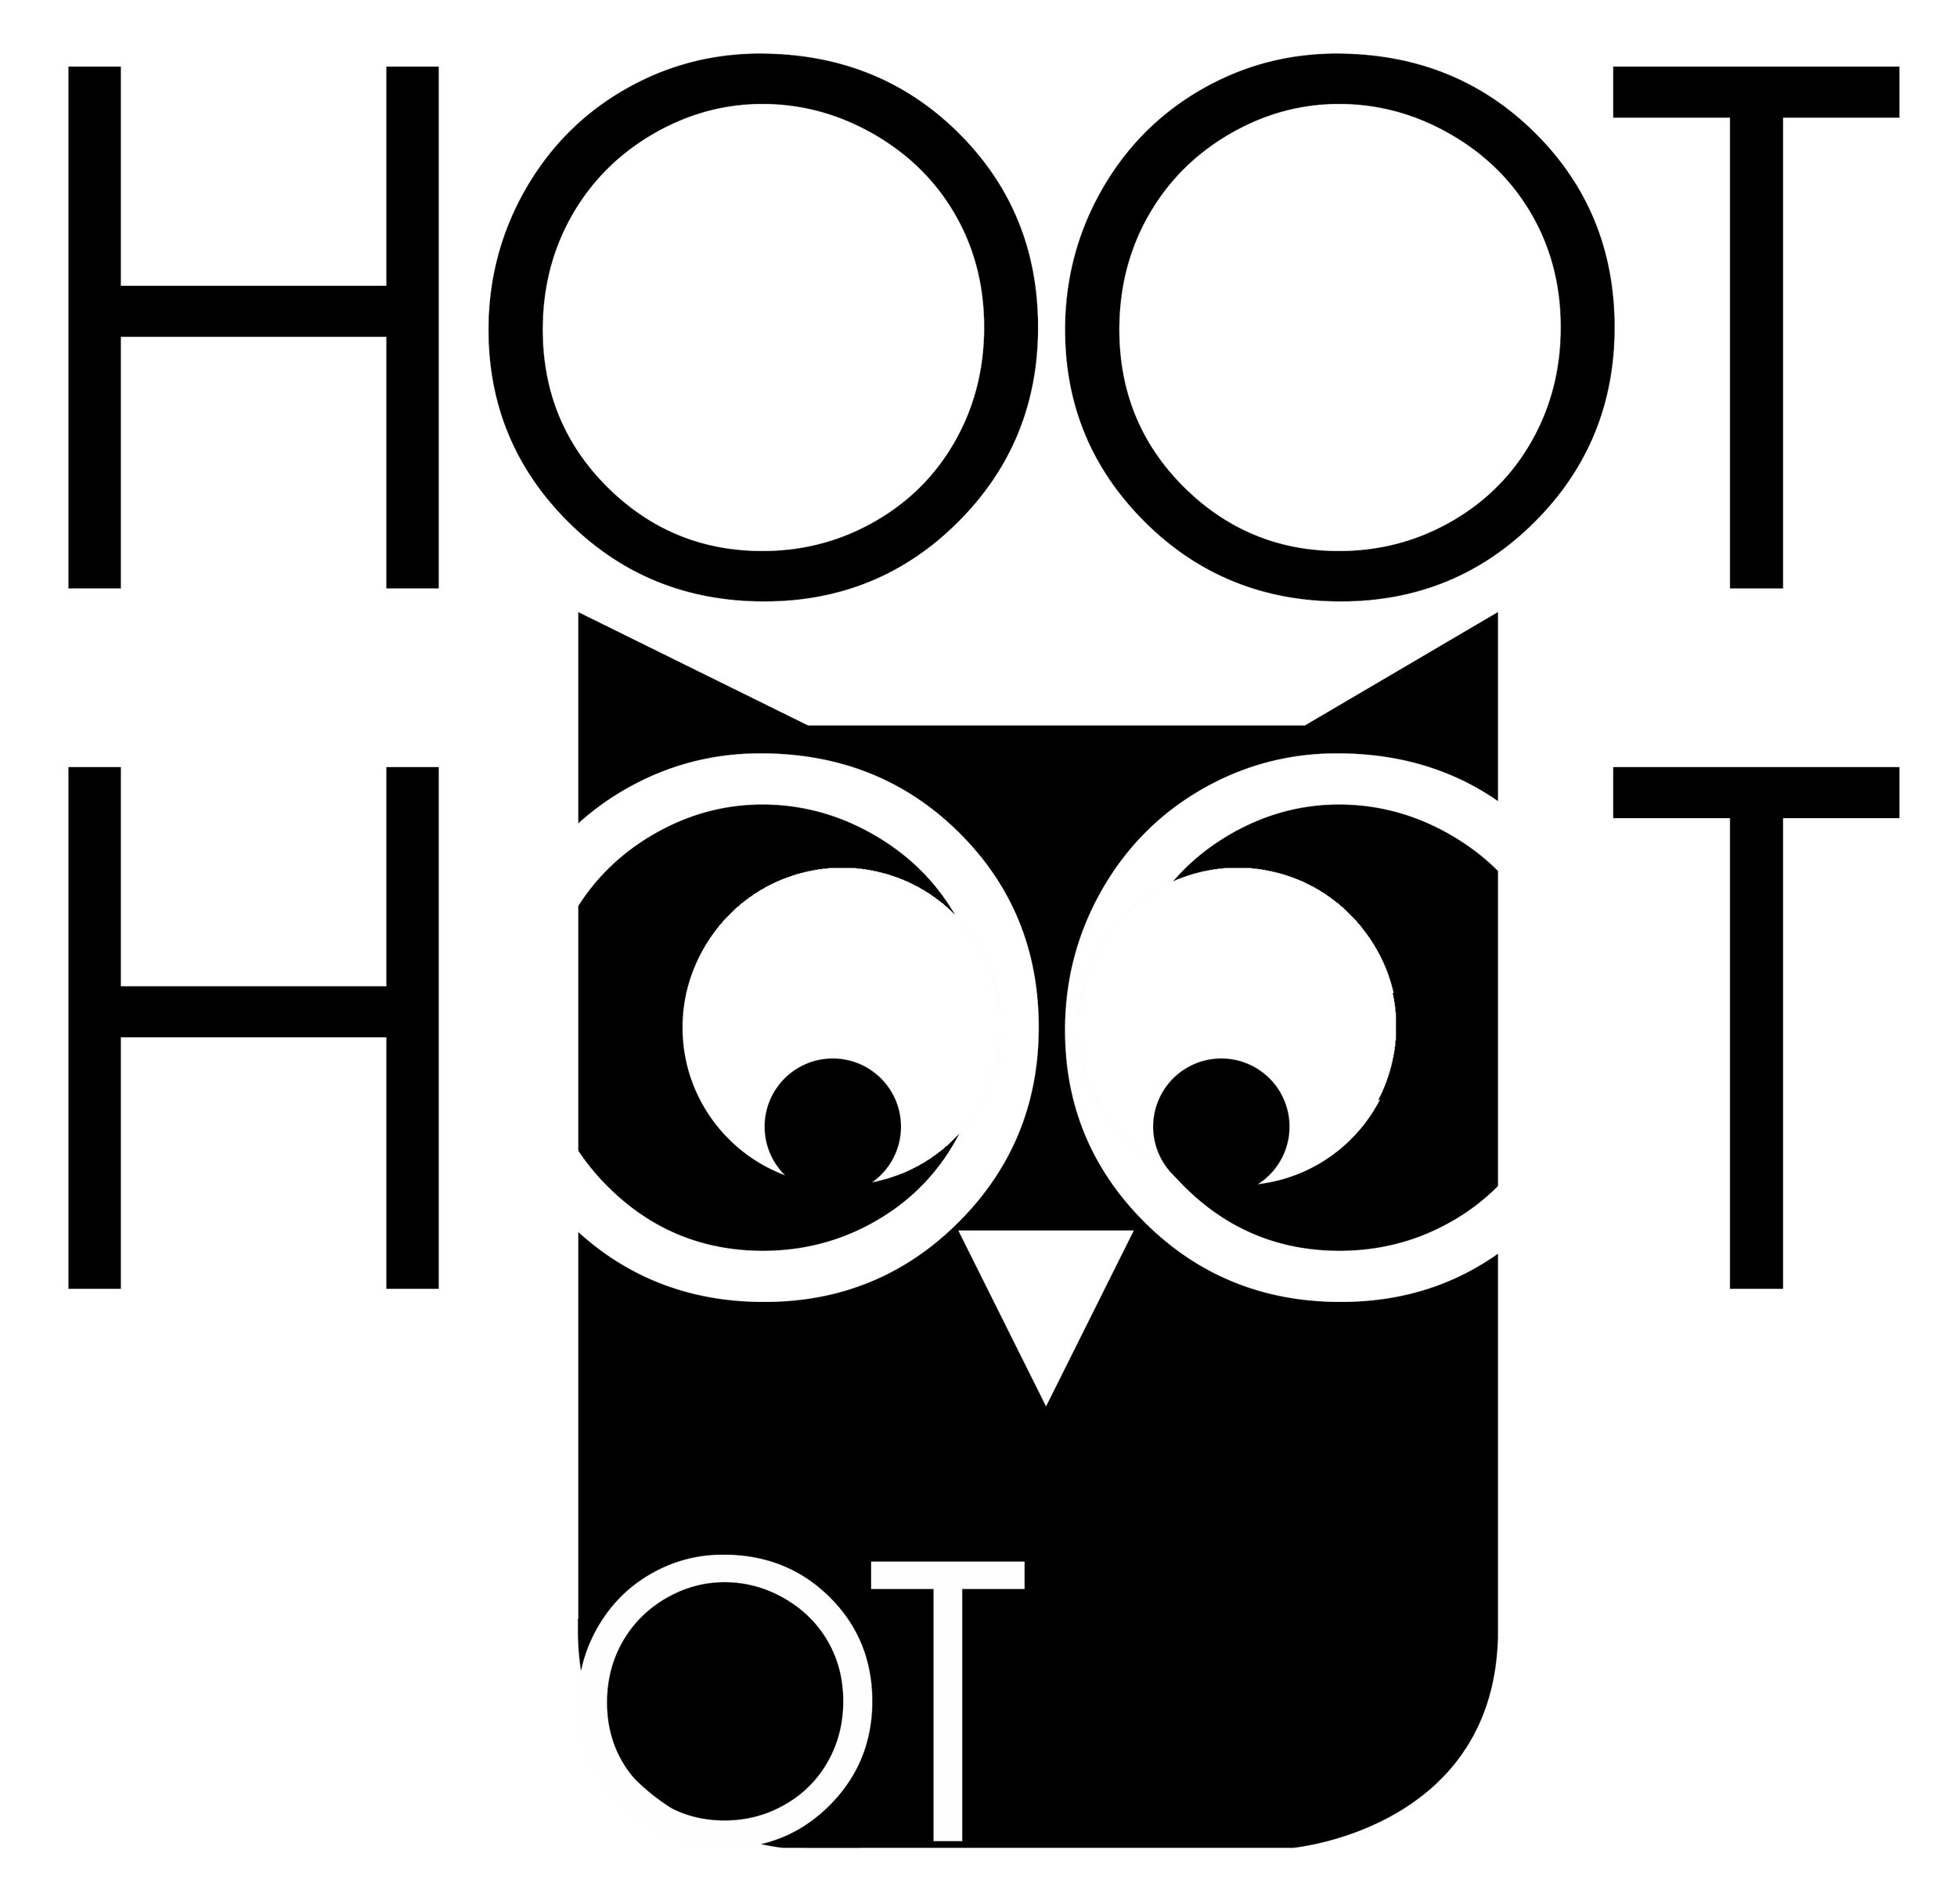 Hoot Hoot OT